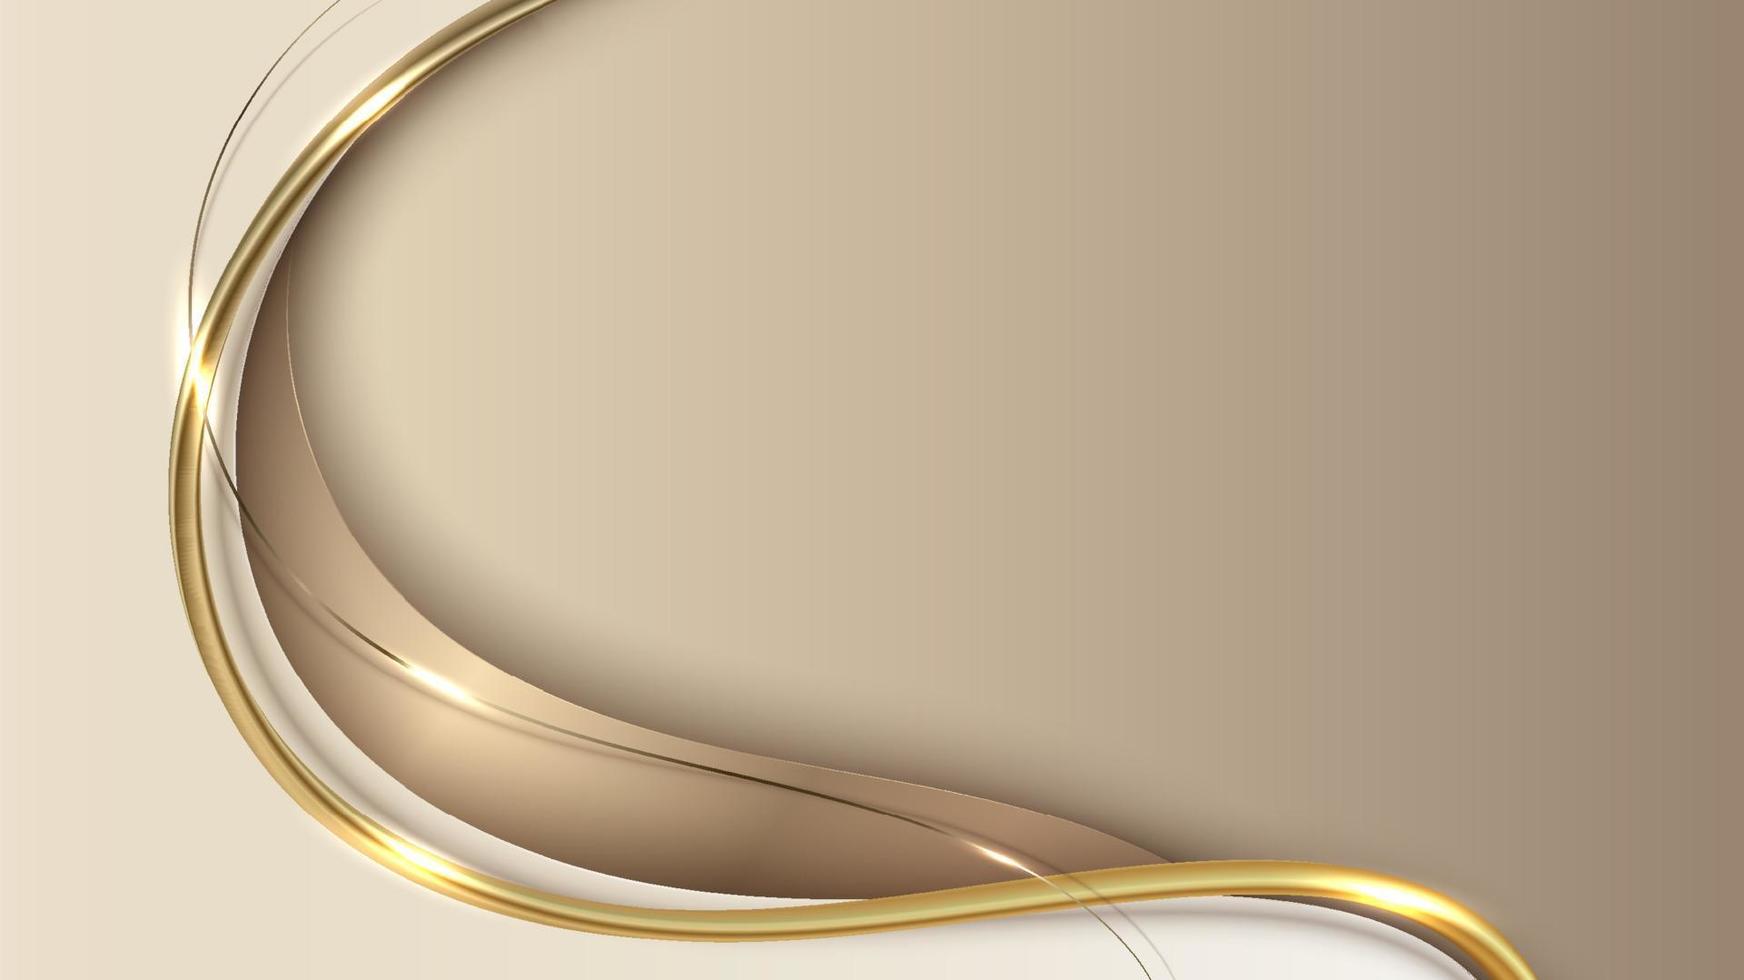 abstracte sjabloon 3d elegante gouden golfvorm met glanzende gouden lijn sprankelende verlichting op crème achtergrond luxe stijl vector